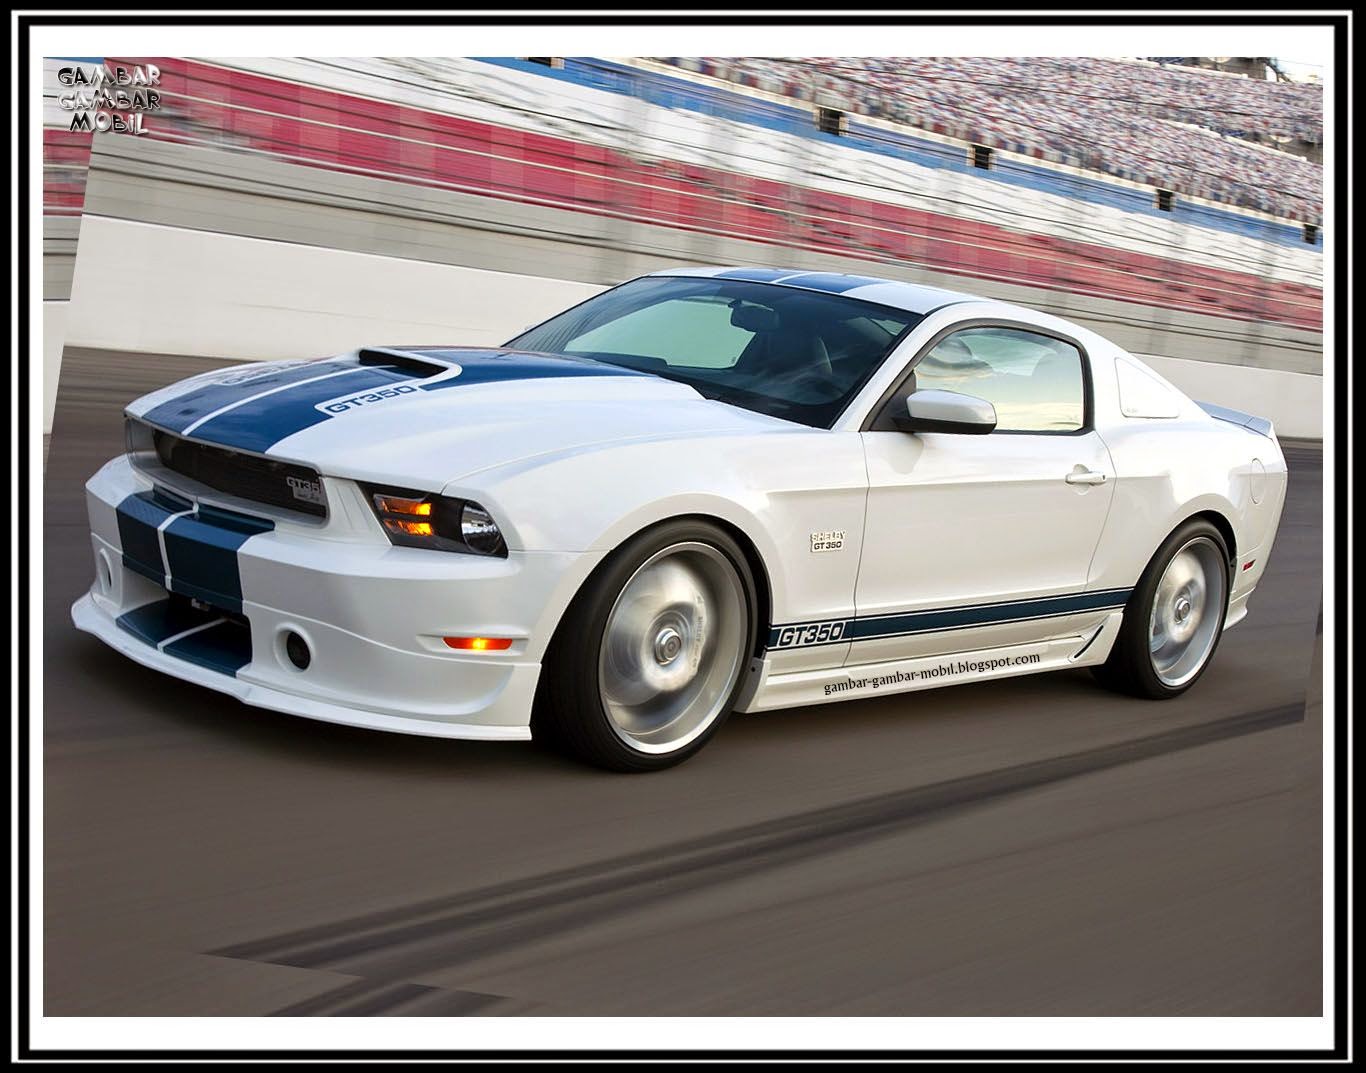 Gambar Mobil Mustang Gt Terbaru Gambar Mo